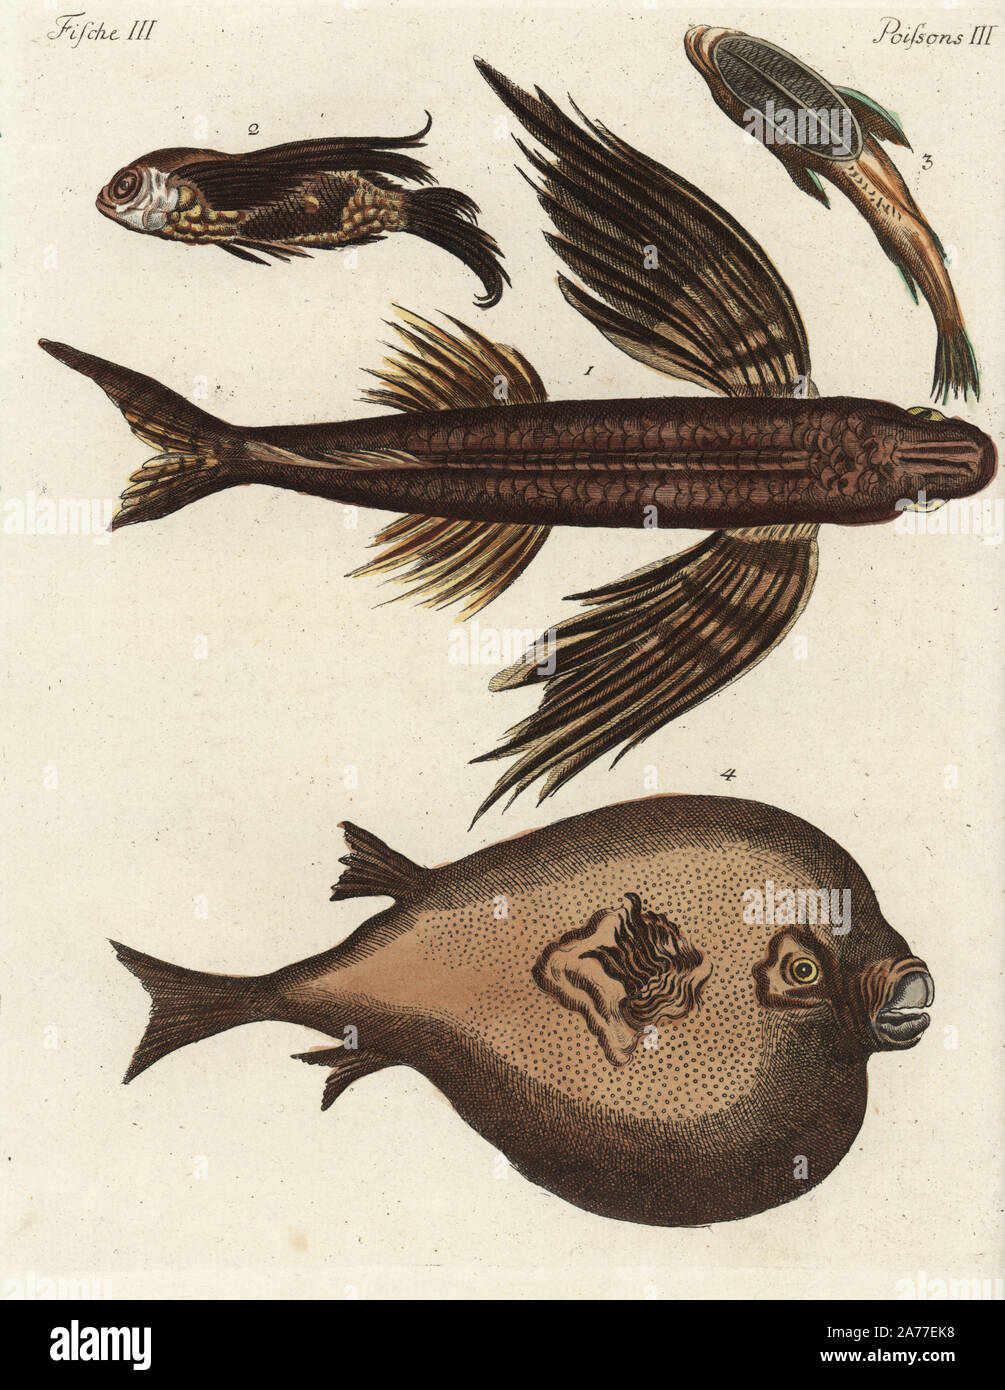 Les espèces de poissons volants, 1,2 ou 3 remora suckerfish, et round boxfish 4. Coloriée à la gravure sur cuivre de Johann Friedrich Bertuch's 'Bilderbuch fur Kinder" (Livre d'images pour les enfants), Weimar, 1792. Banque D'Images